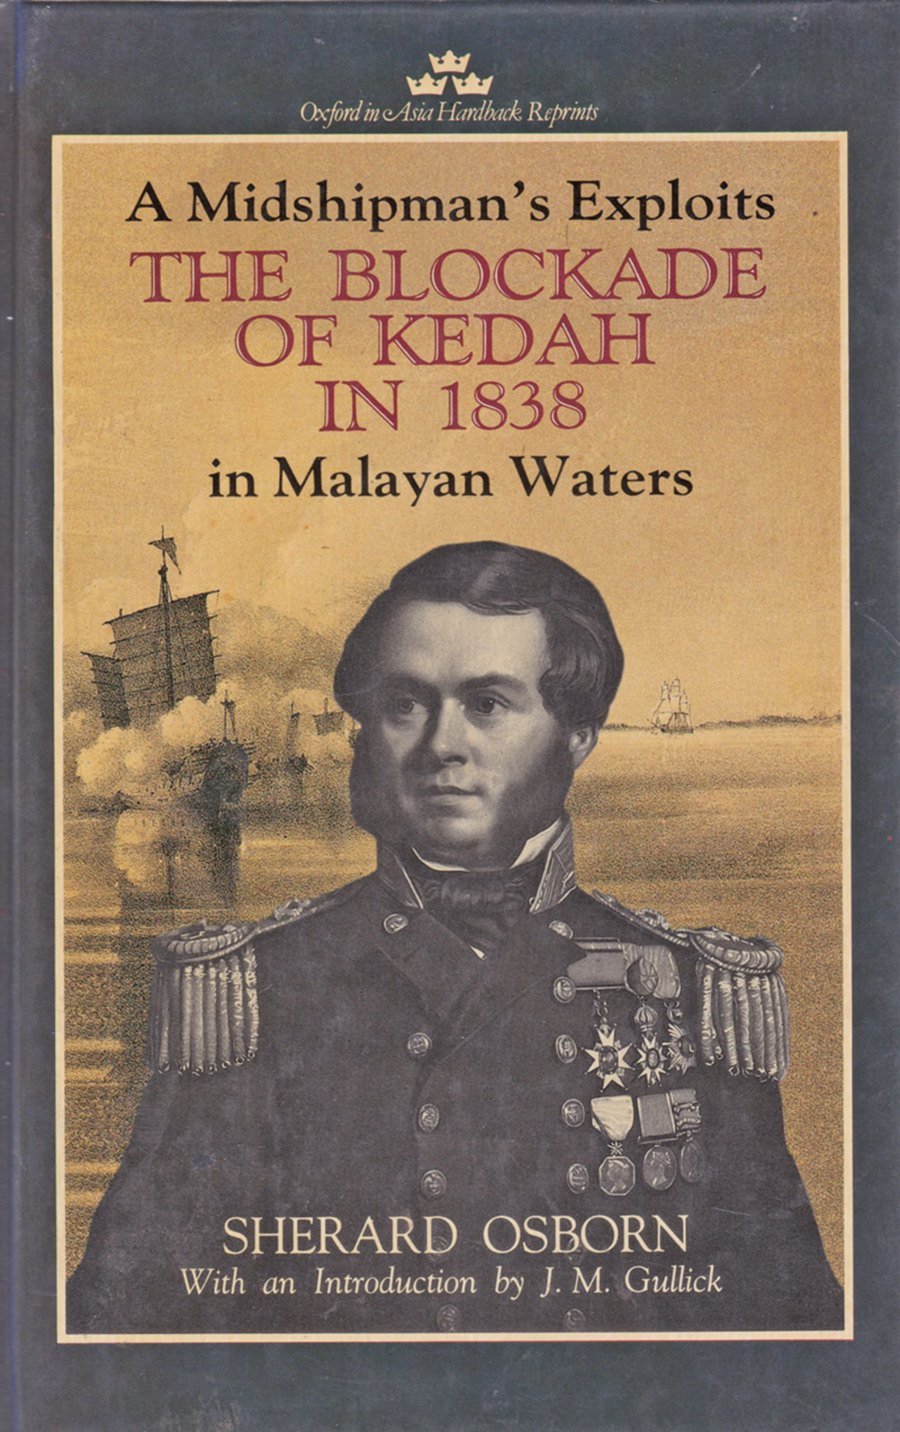 Osborn describes life in early 19th century Kedah vividly.